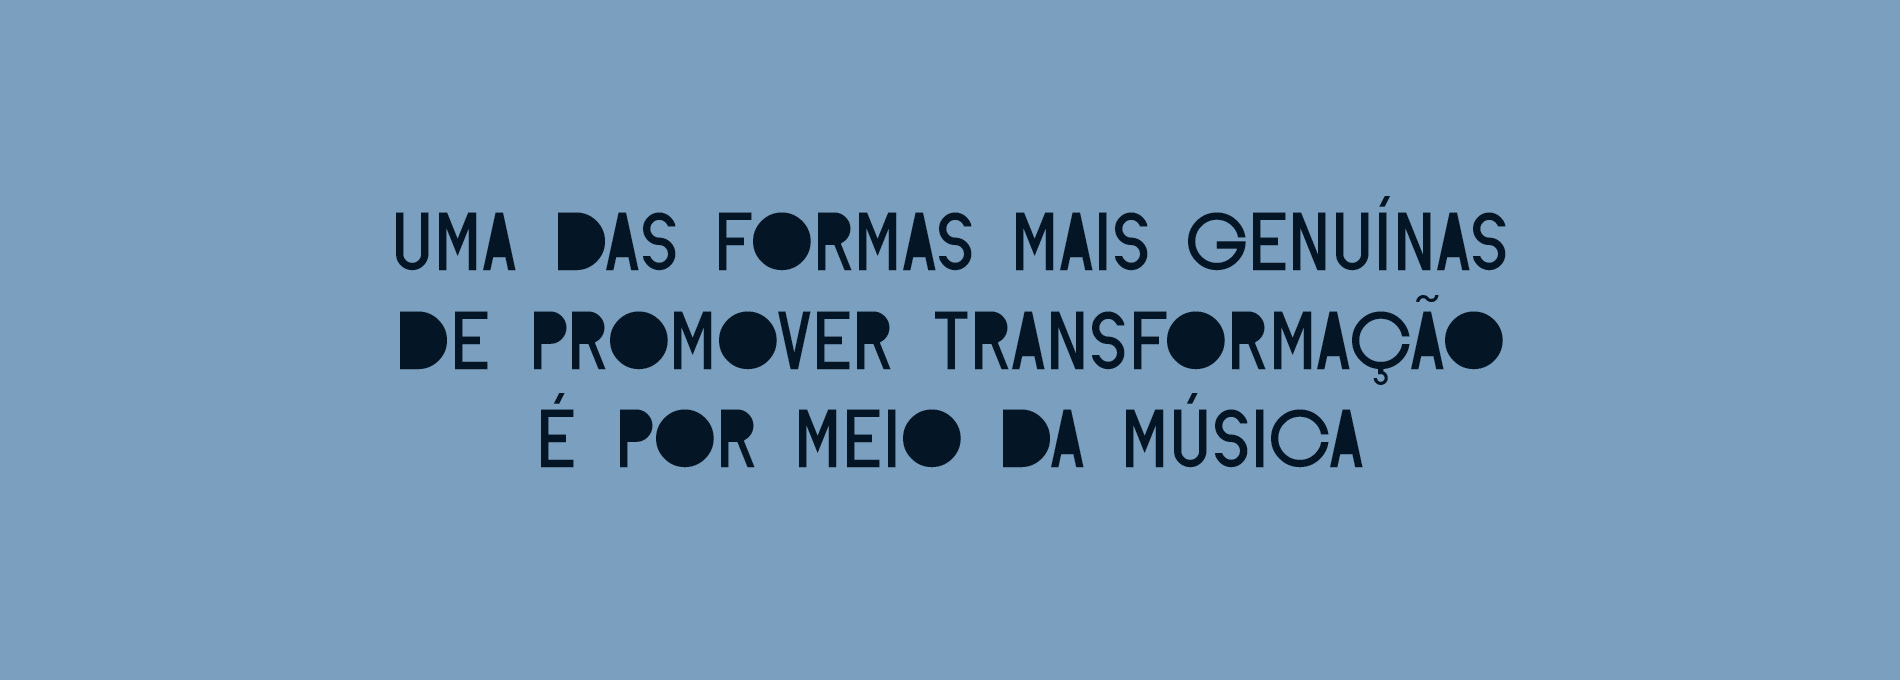 A transformação começa com música